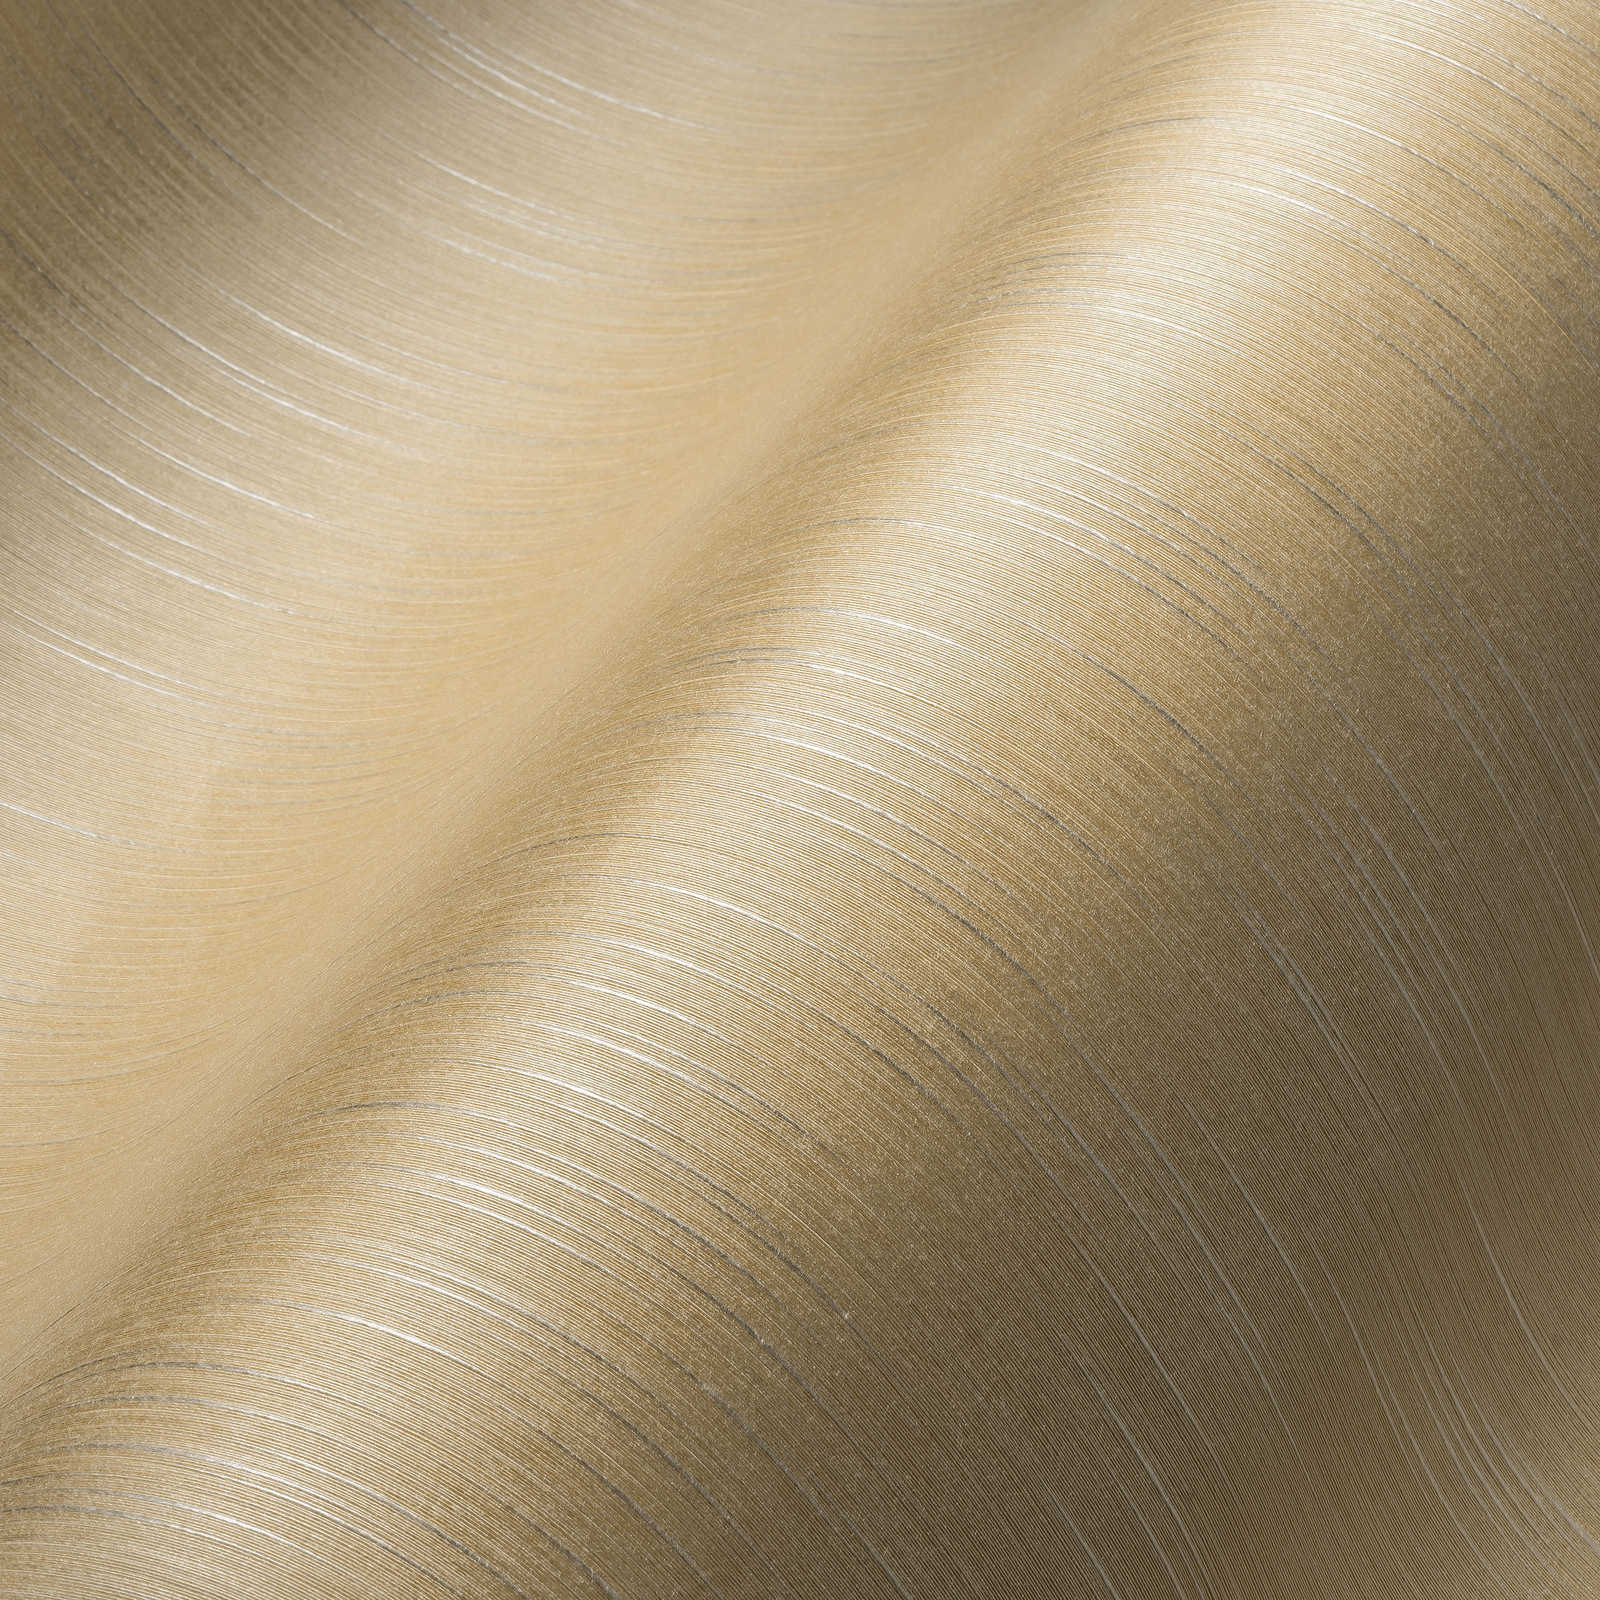             Papel pintado liso no tejido de color crema con efecto metálico y estructura textil
        